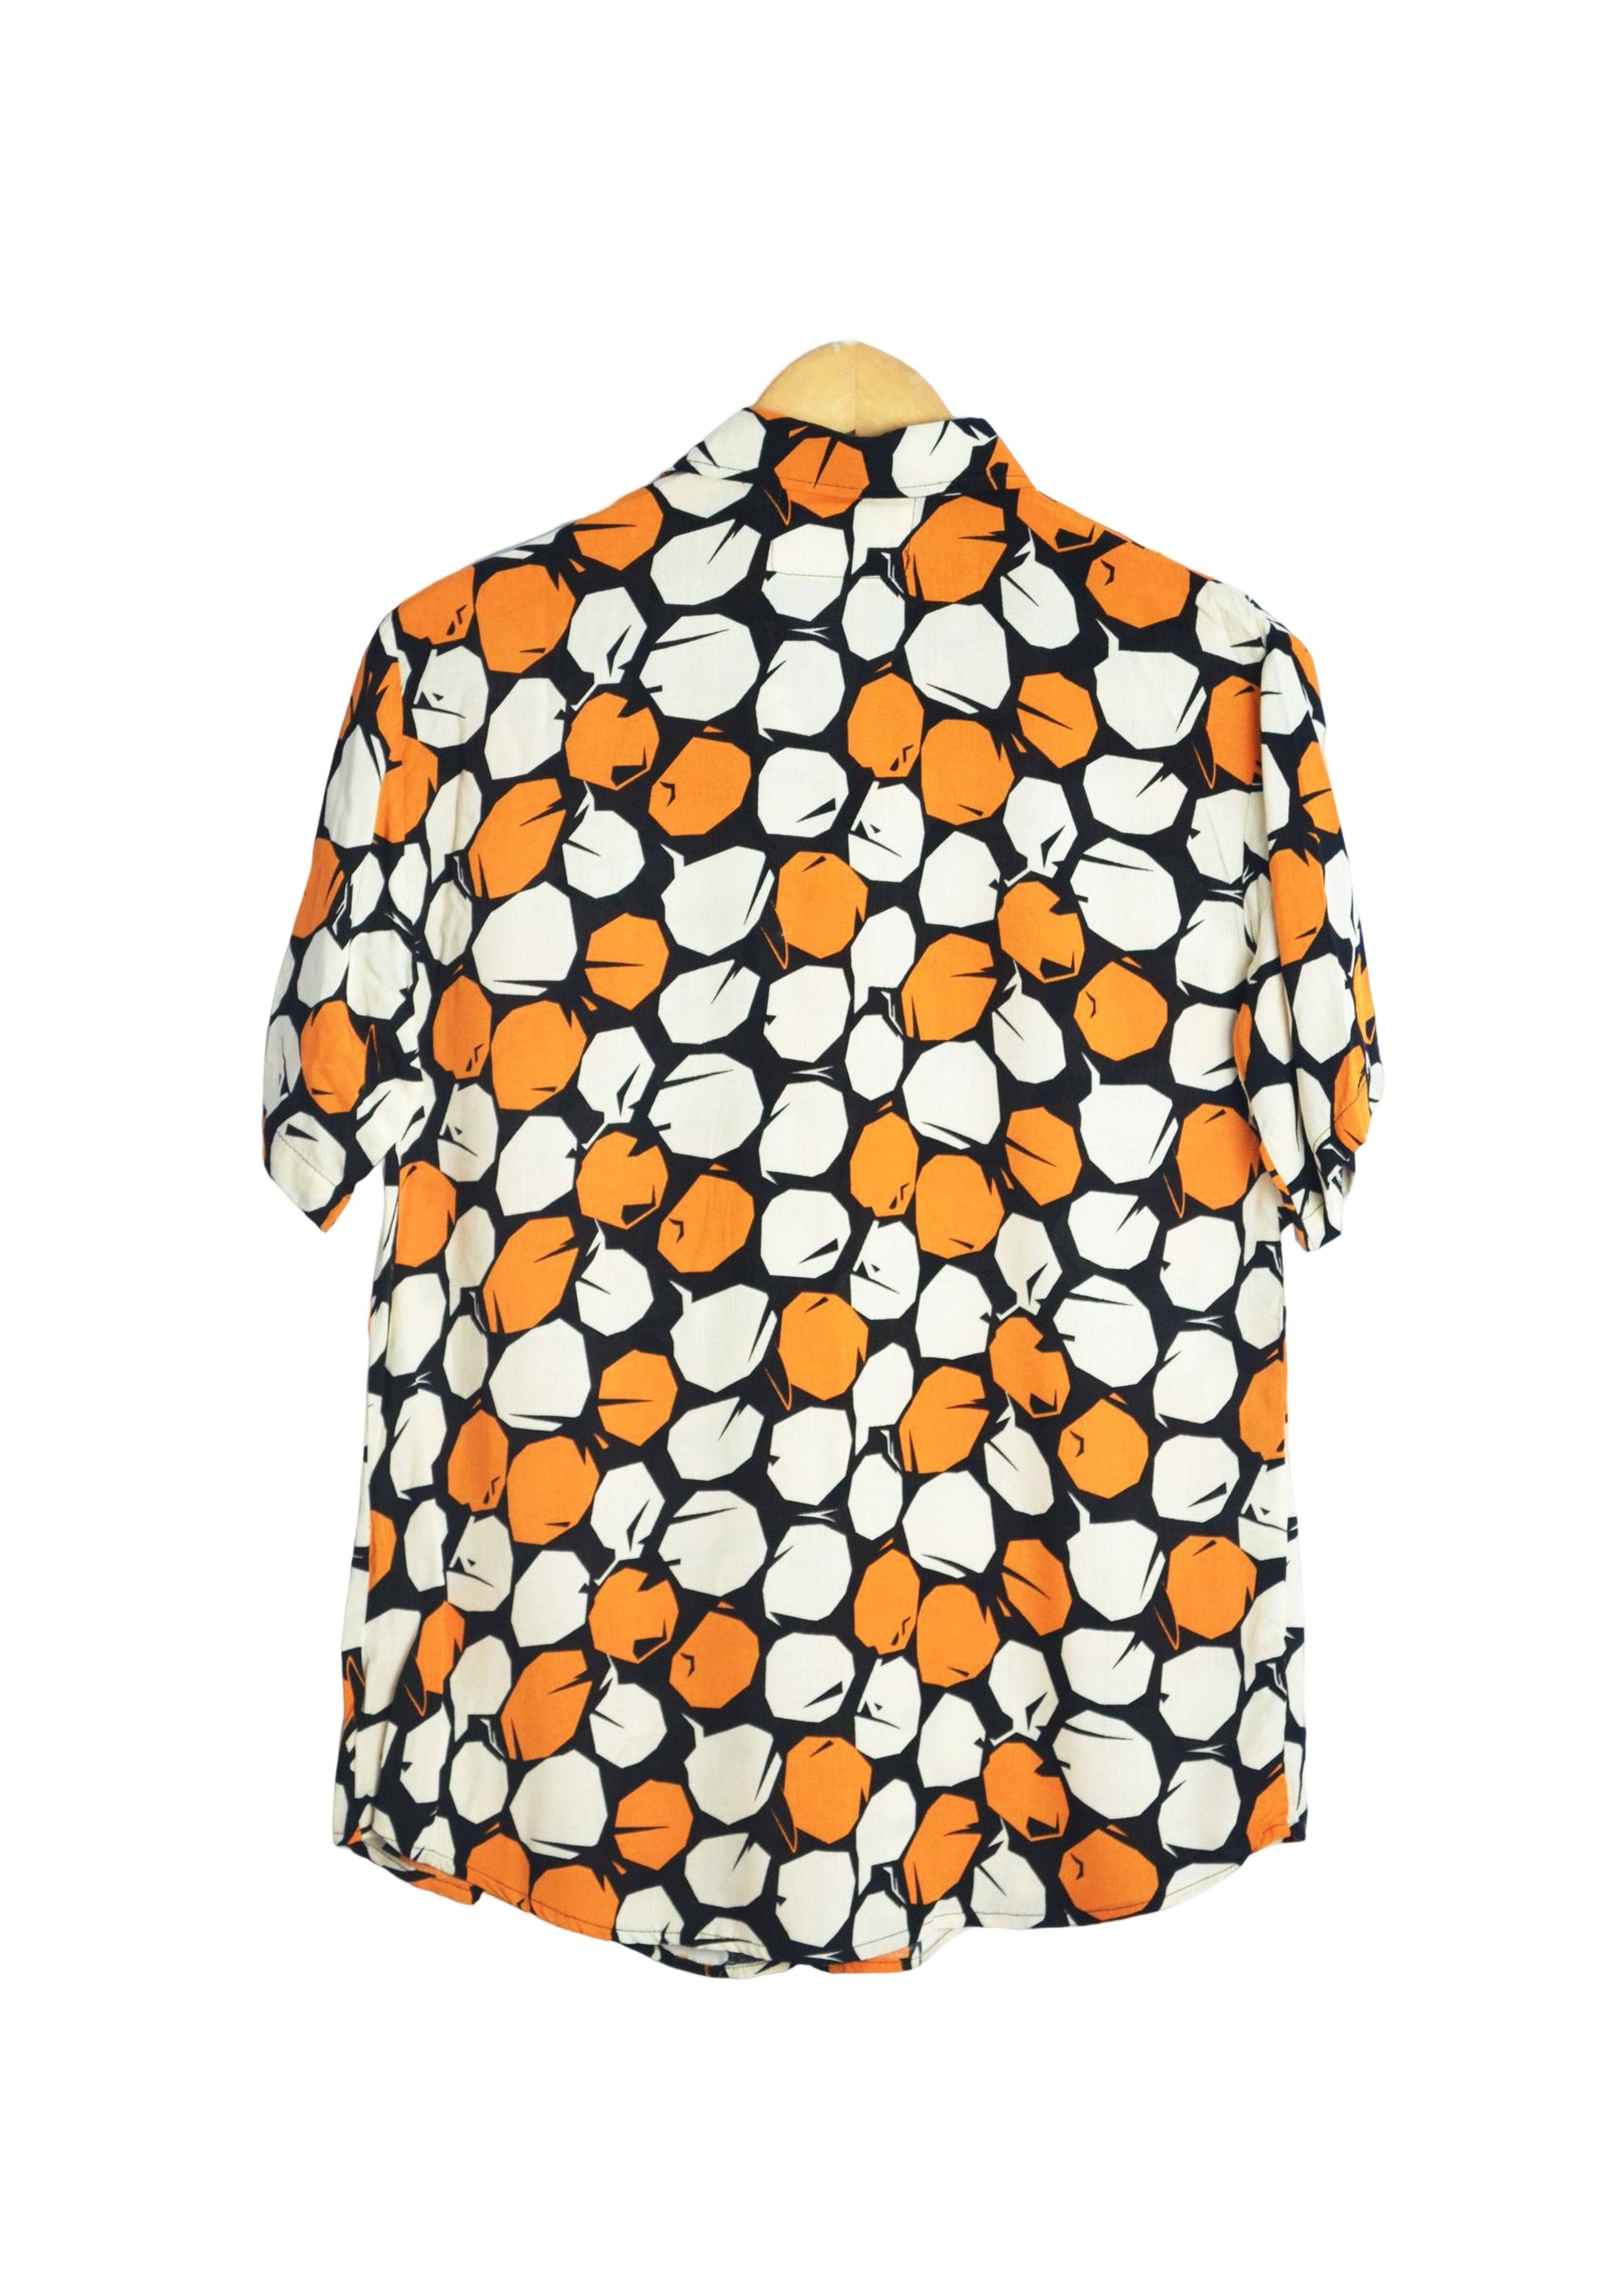 Vue dos chemise noire à motifs ronds orange et beige - GL BOUTIK